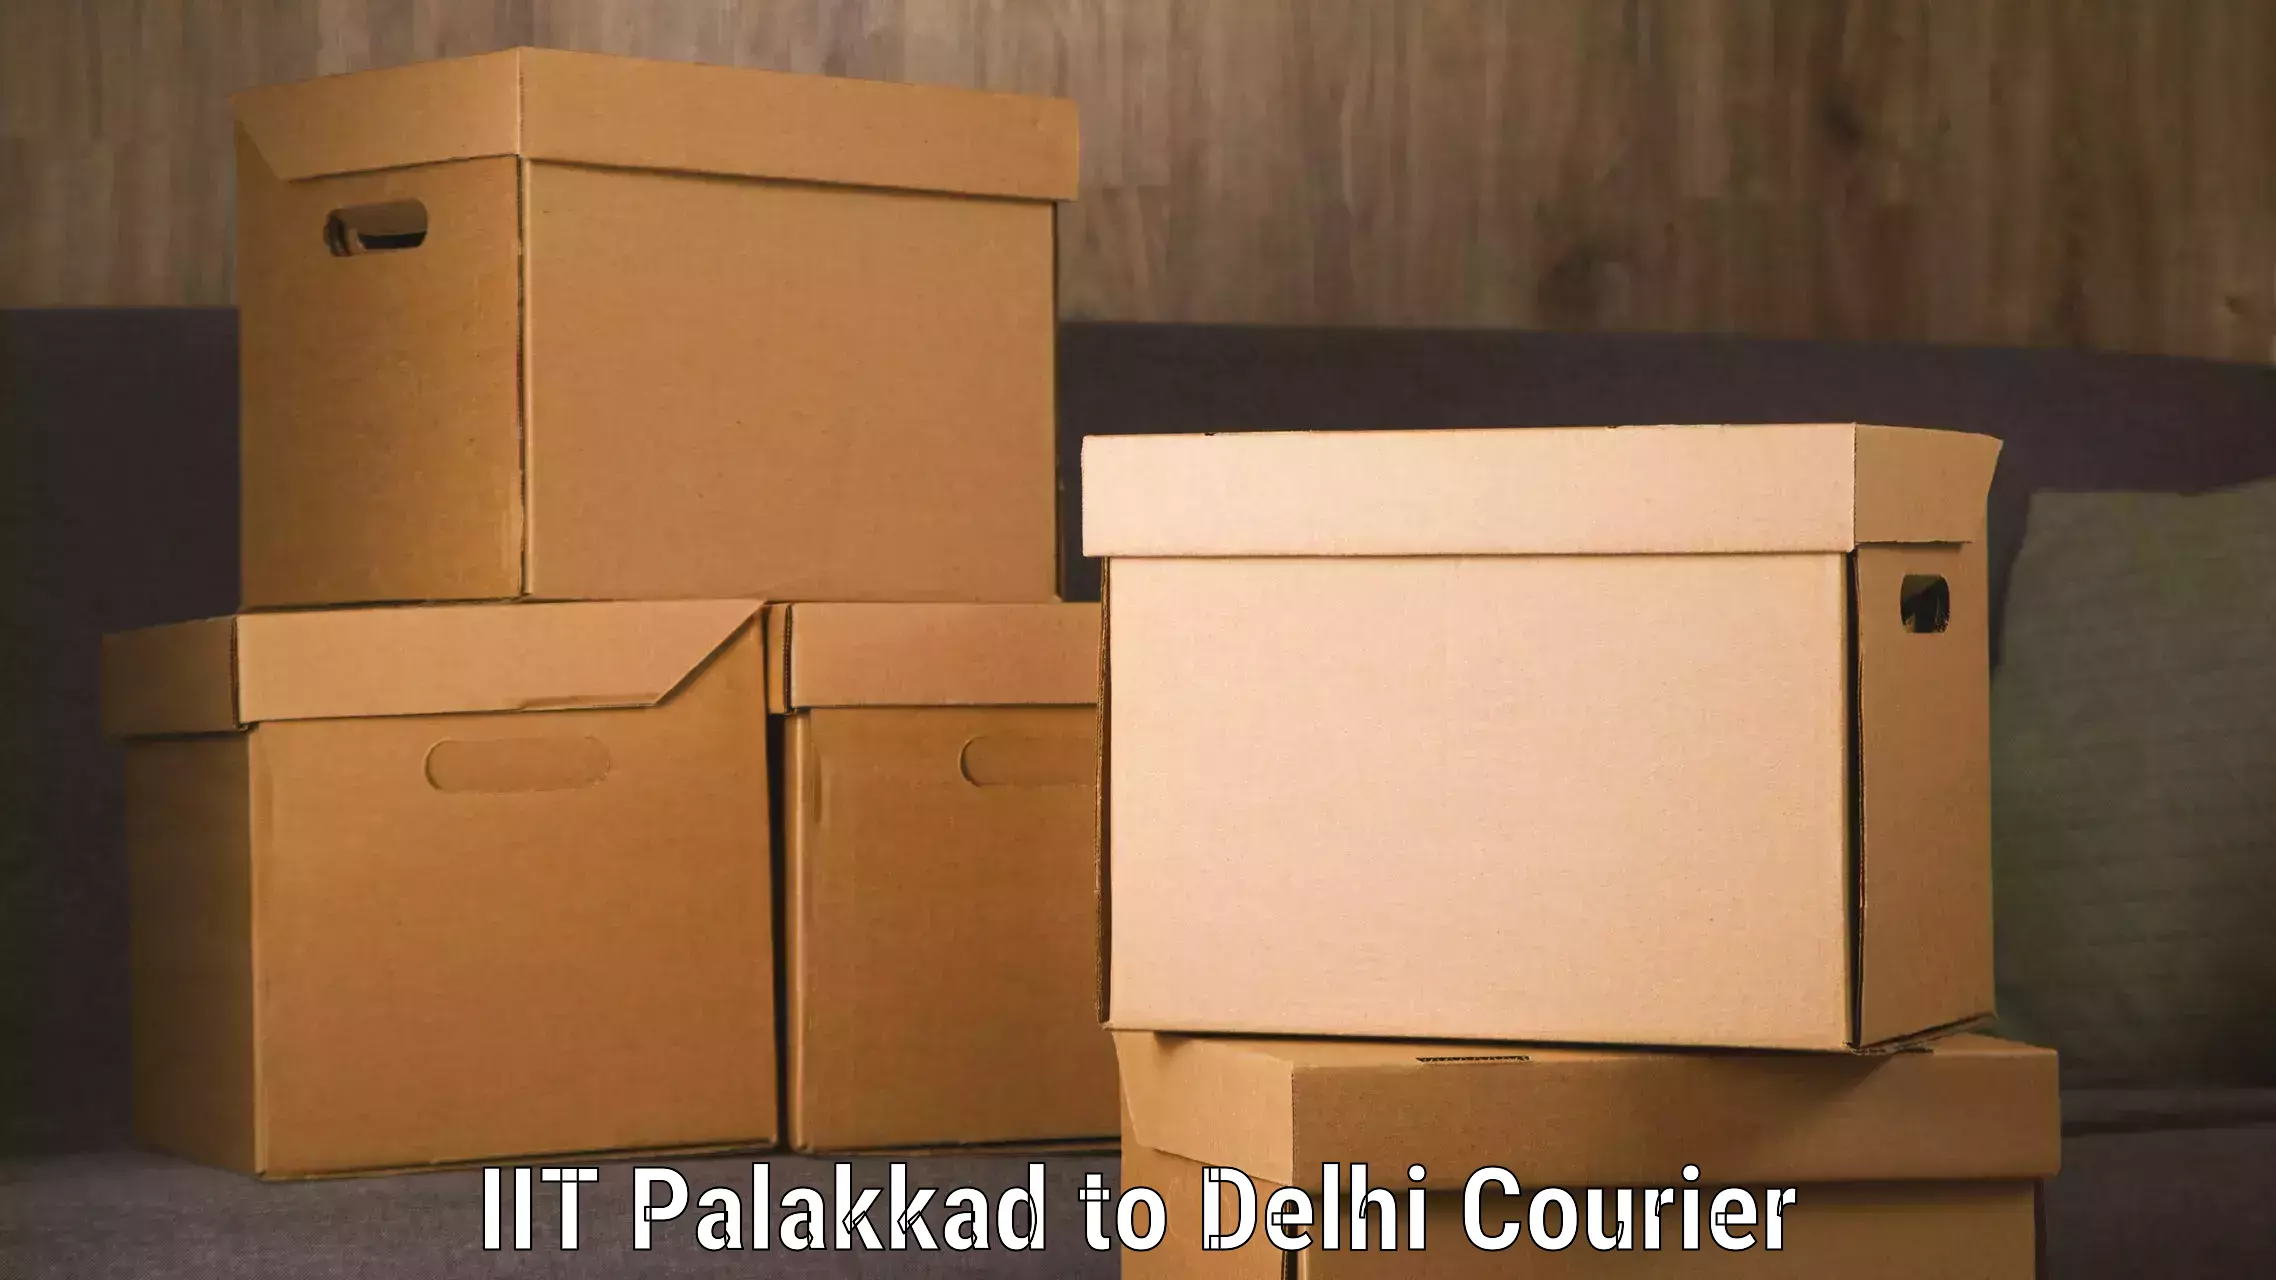 Express logistics IIT Palakkad to NCR